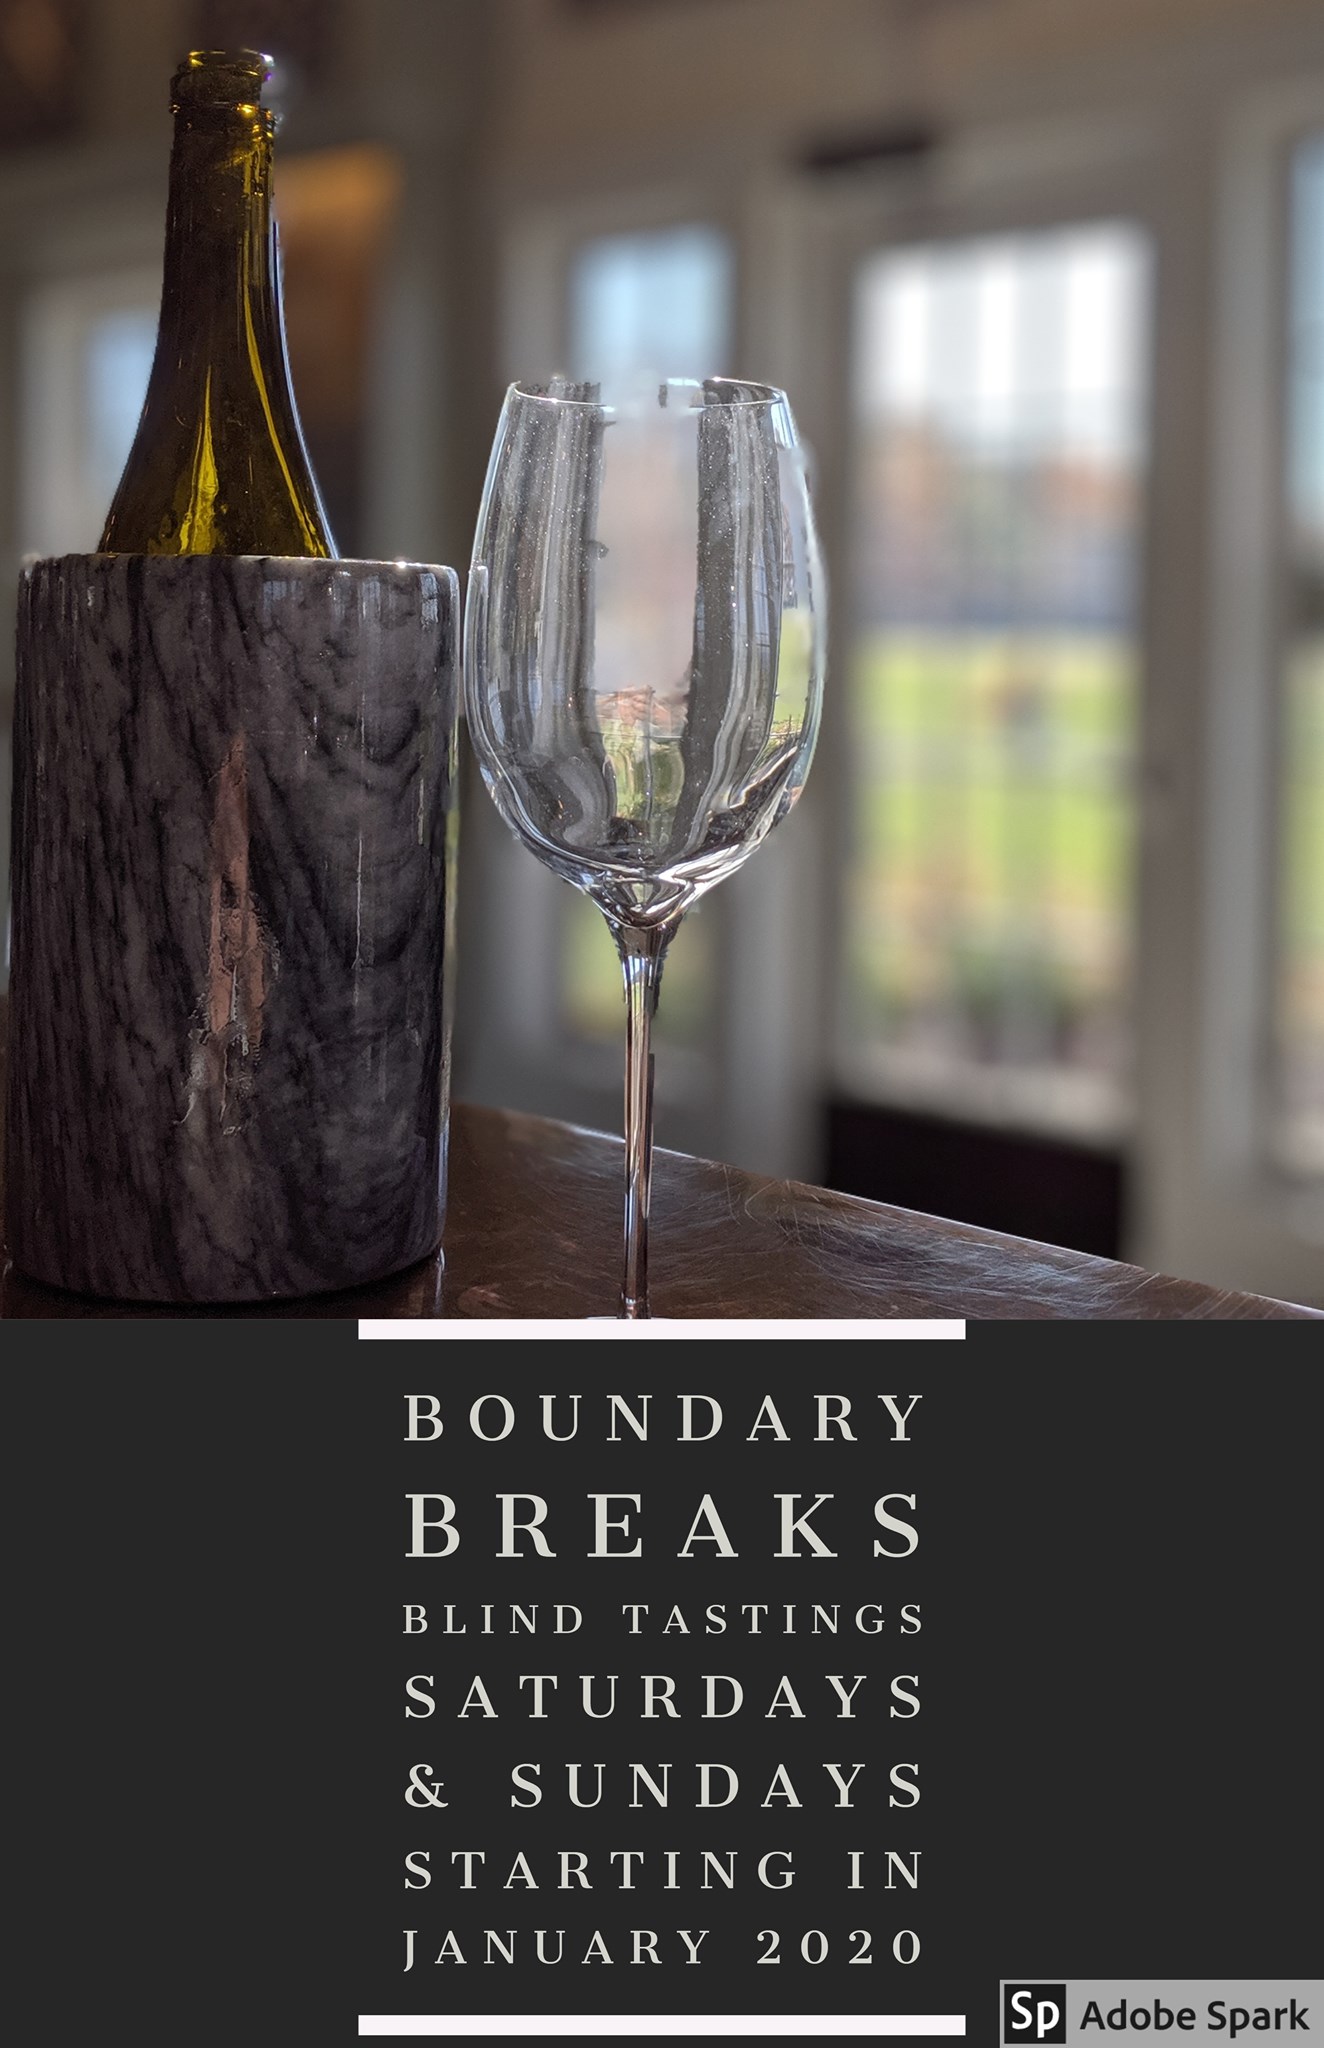 Blind Tasting Series at Boundary Breaks Winery